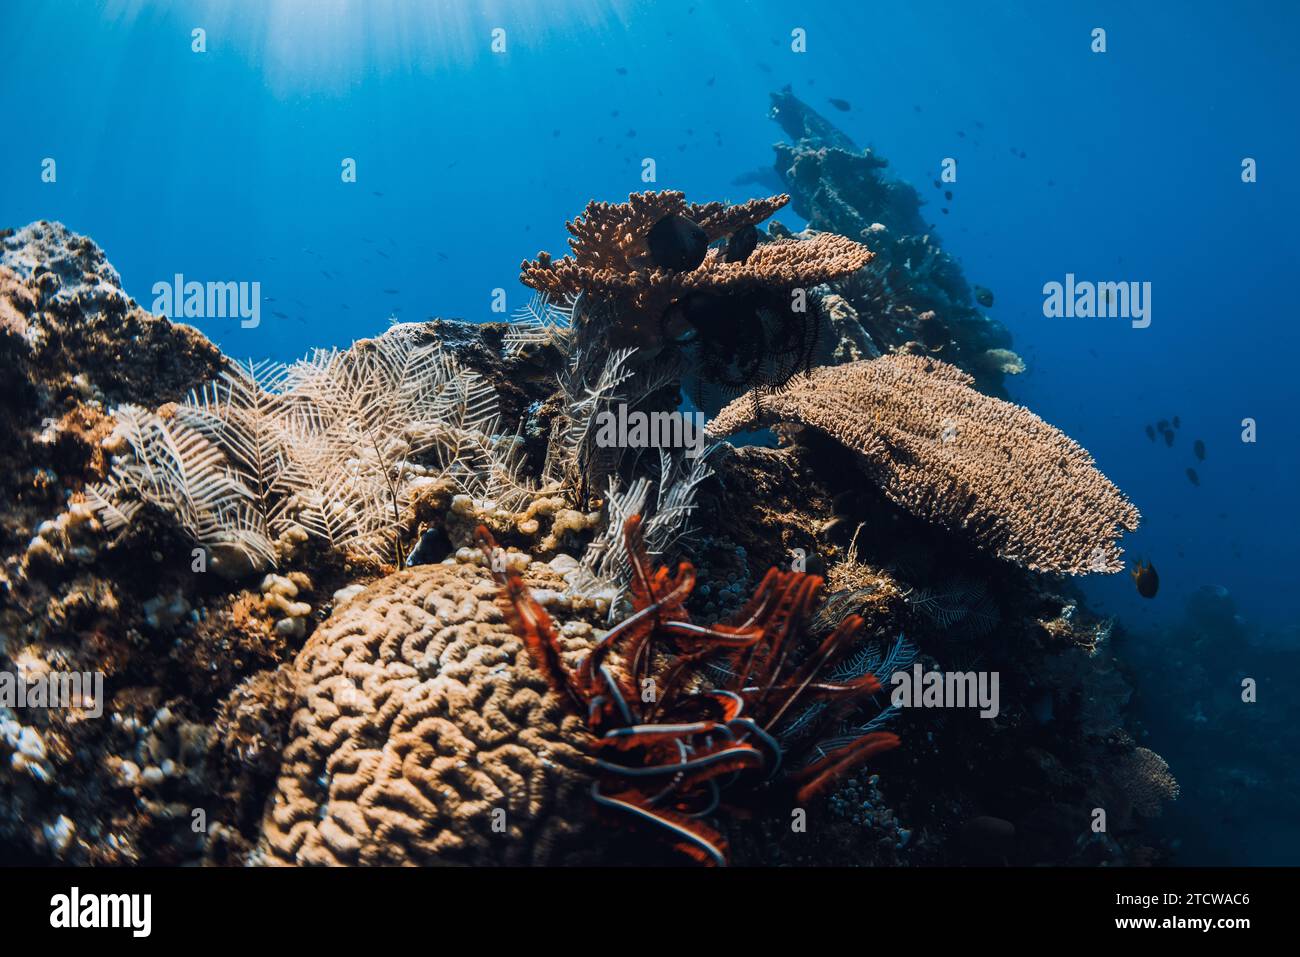 Plongée à USAT Liberty Wreck à Tulamben, Bali. Coraux et vie marine dans la mer bleu profond sur naufrage Banque D'Images